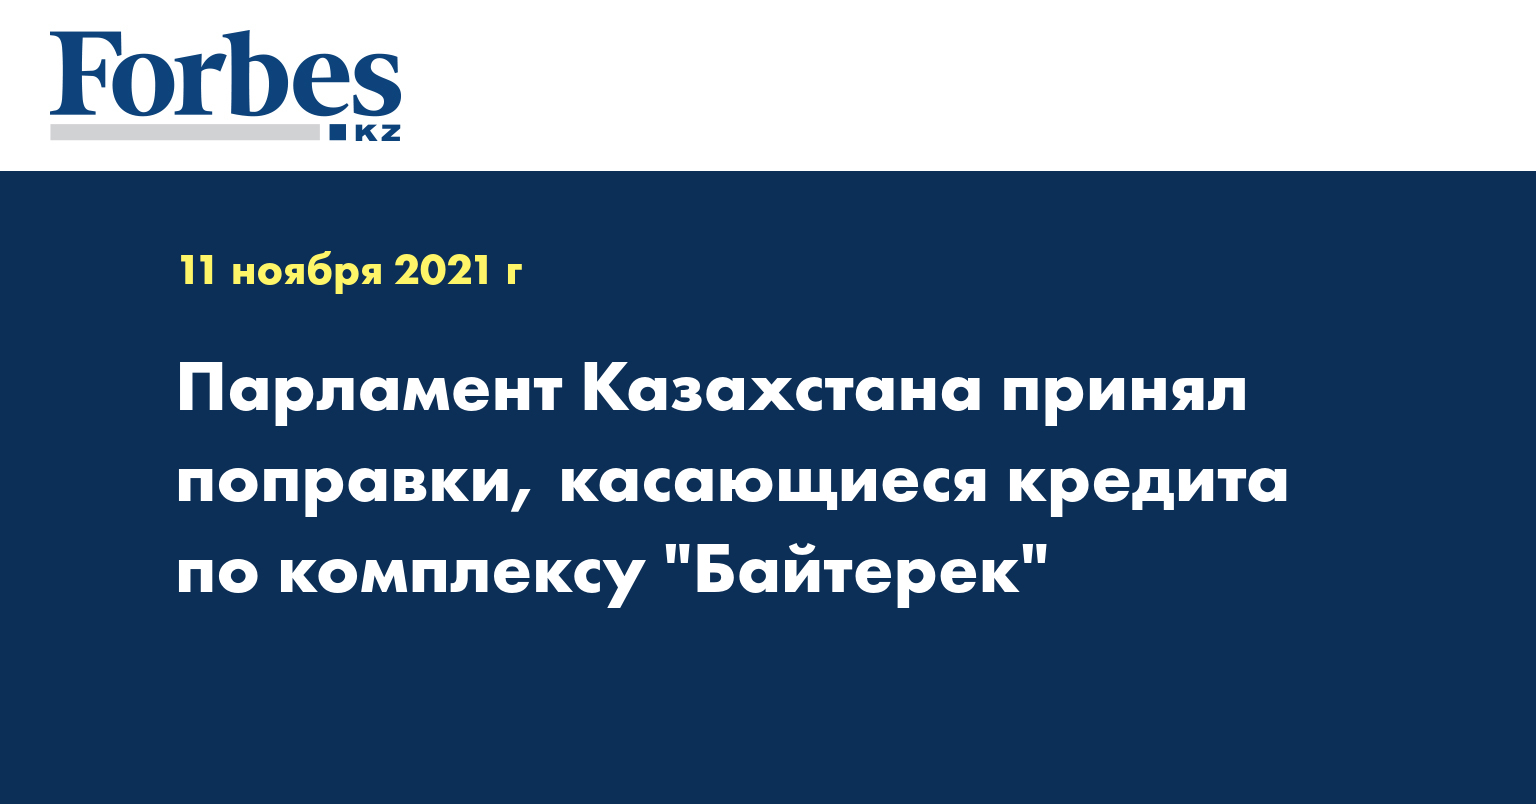 Парламент Казахстана принял поправки, касающиеся кредита по комплексу 